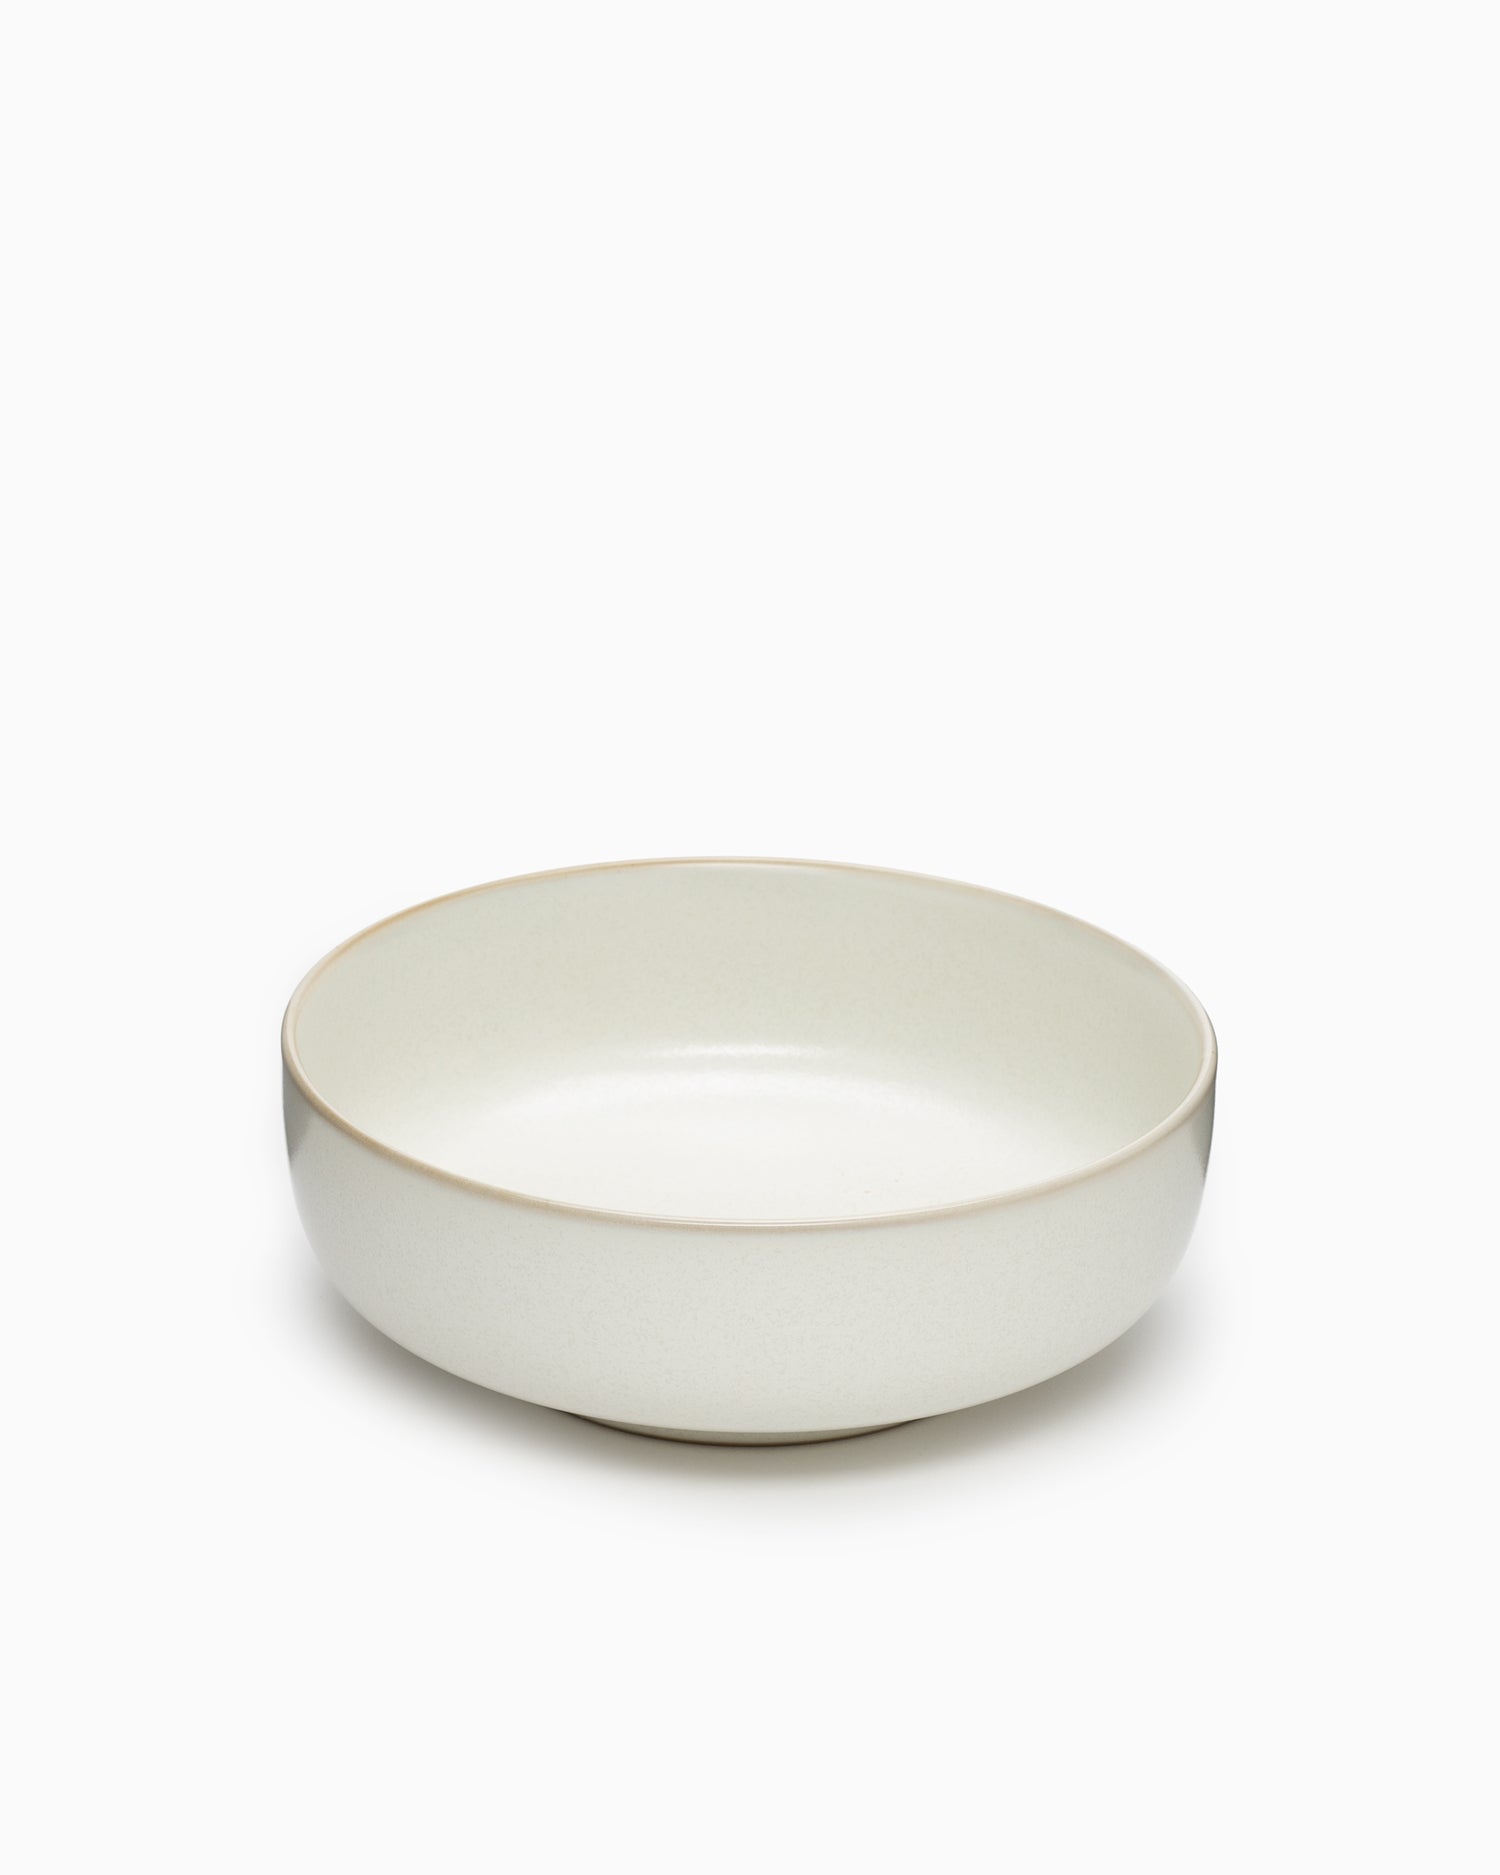 Sekki Bowl Medium - Cream